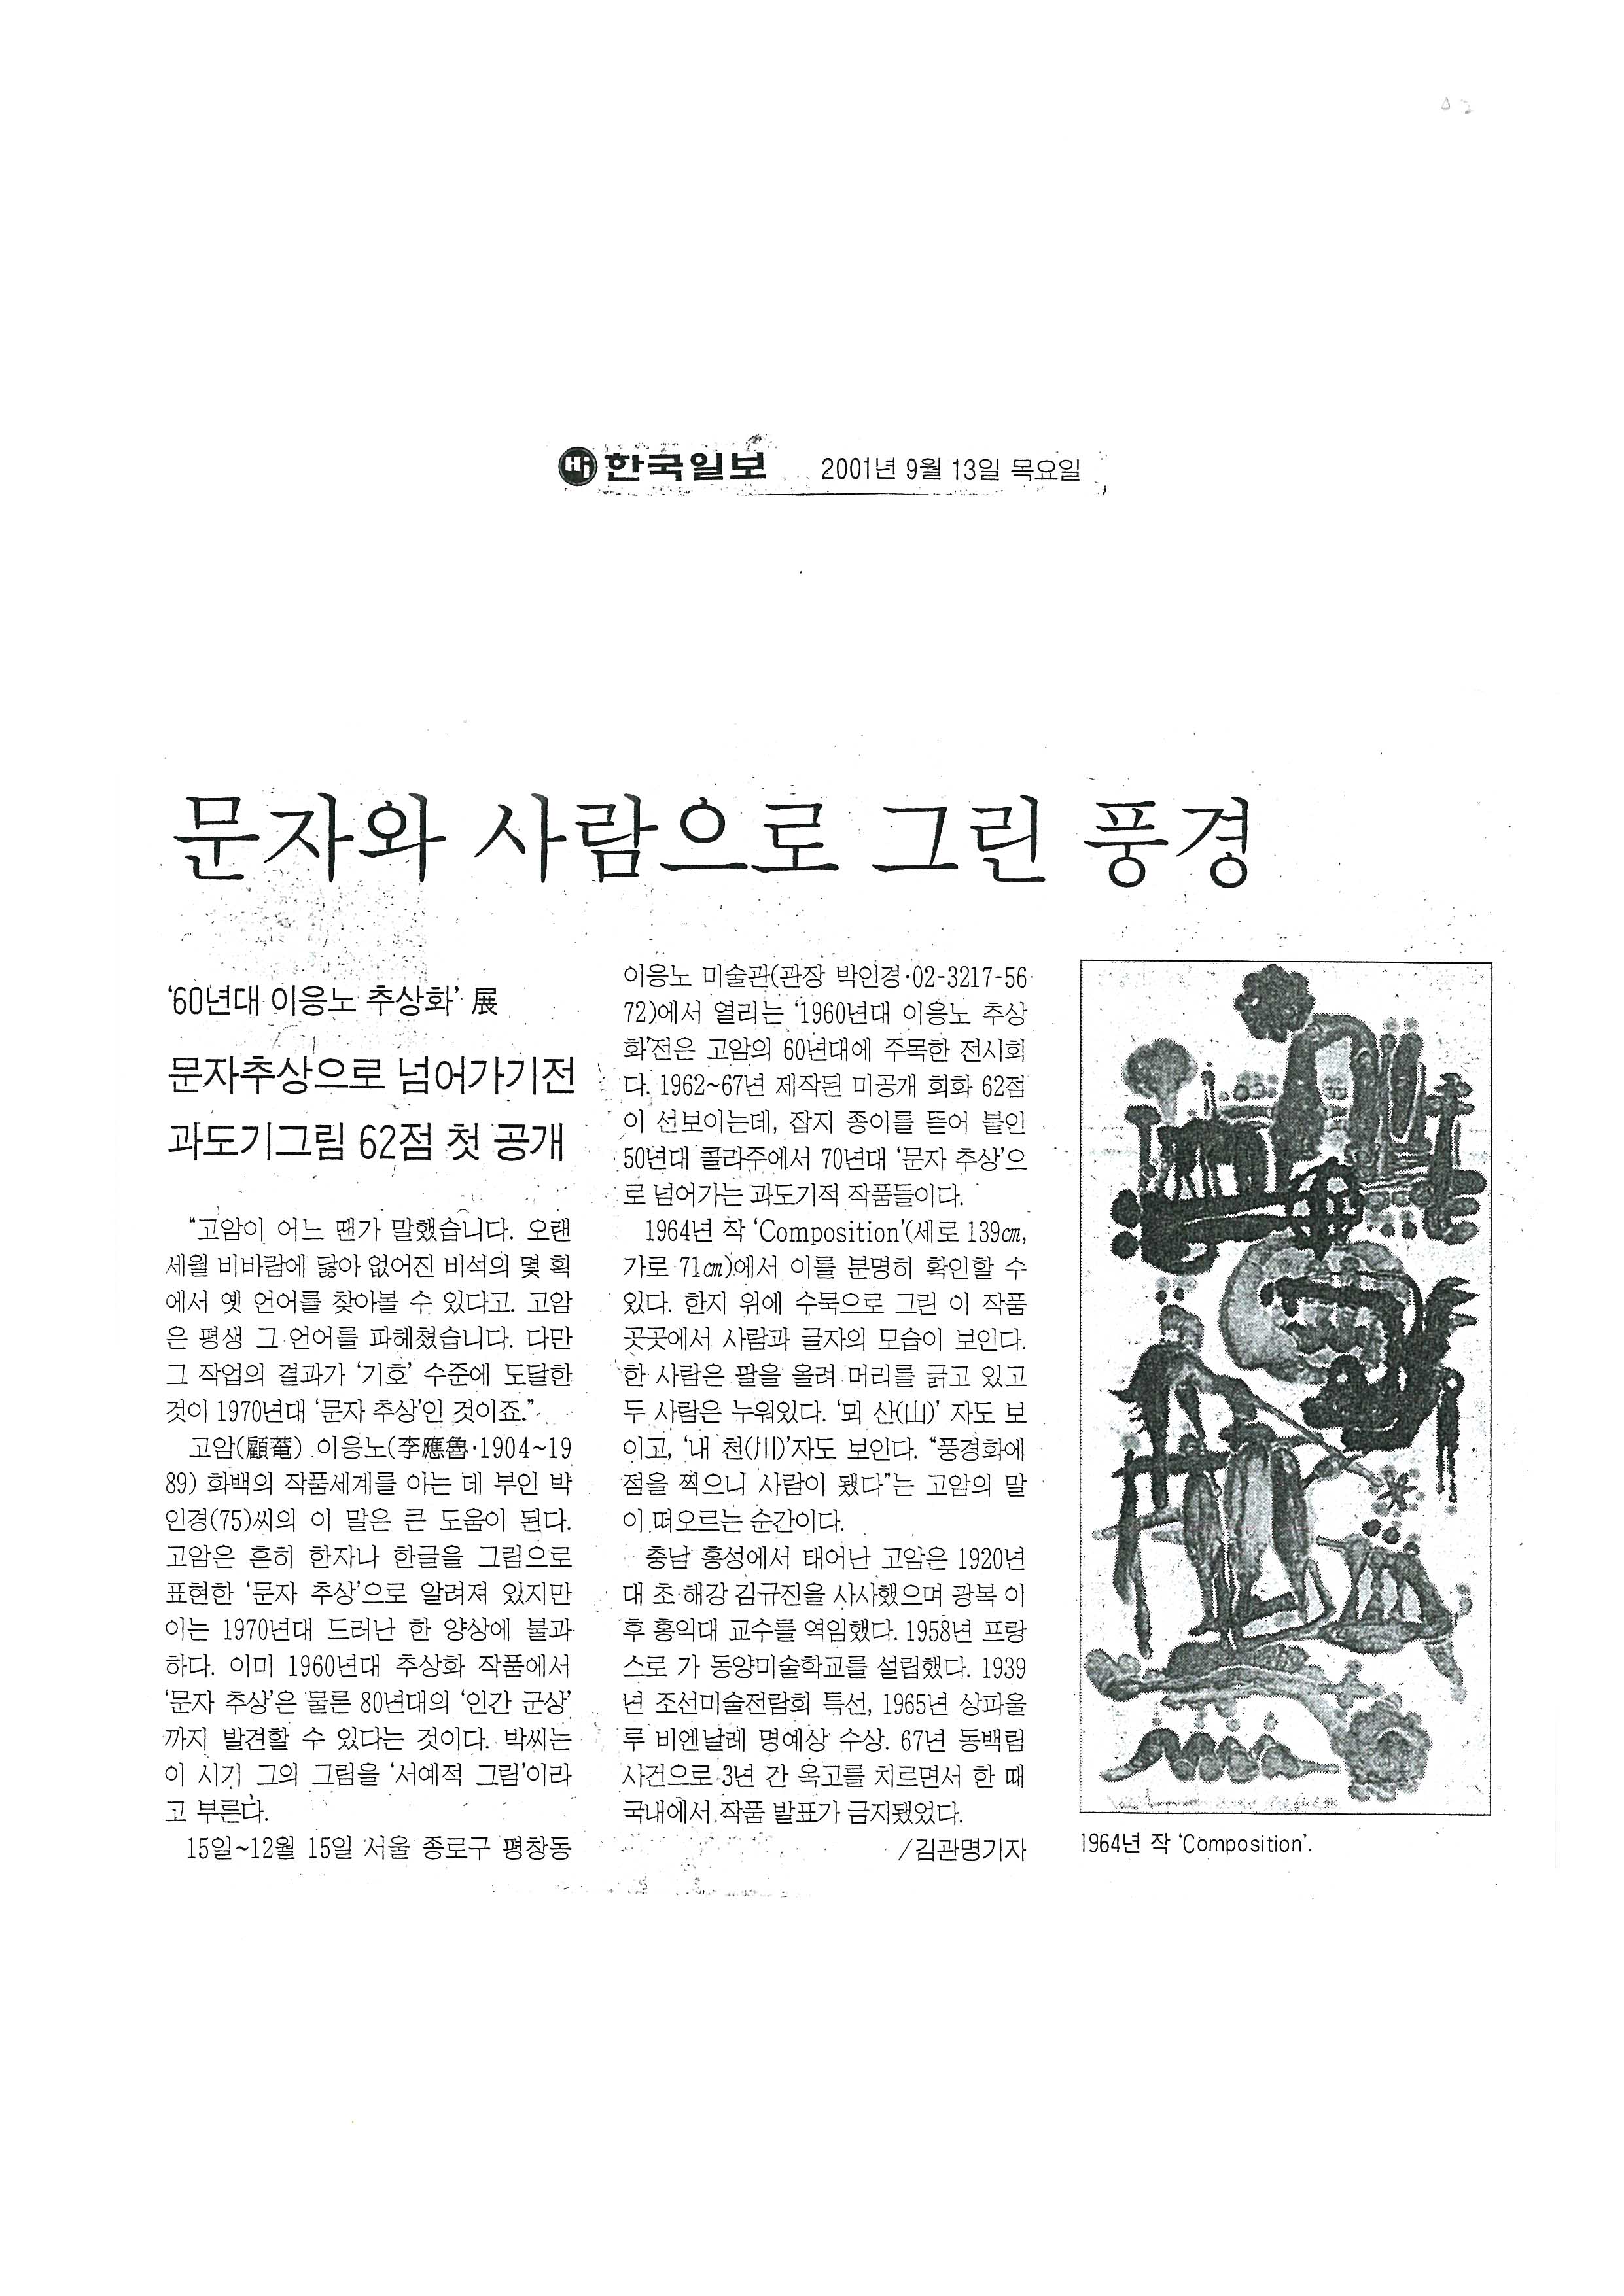  「문자와 사람으로 그린 풍경」, 『한국일보』 